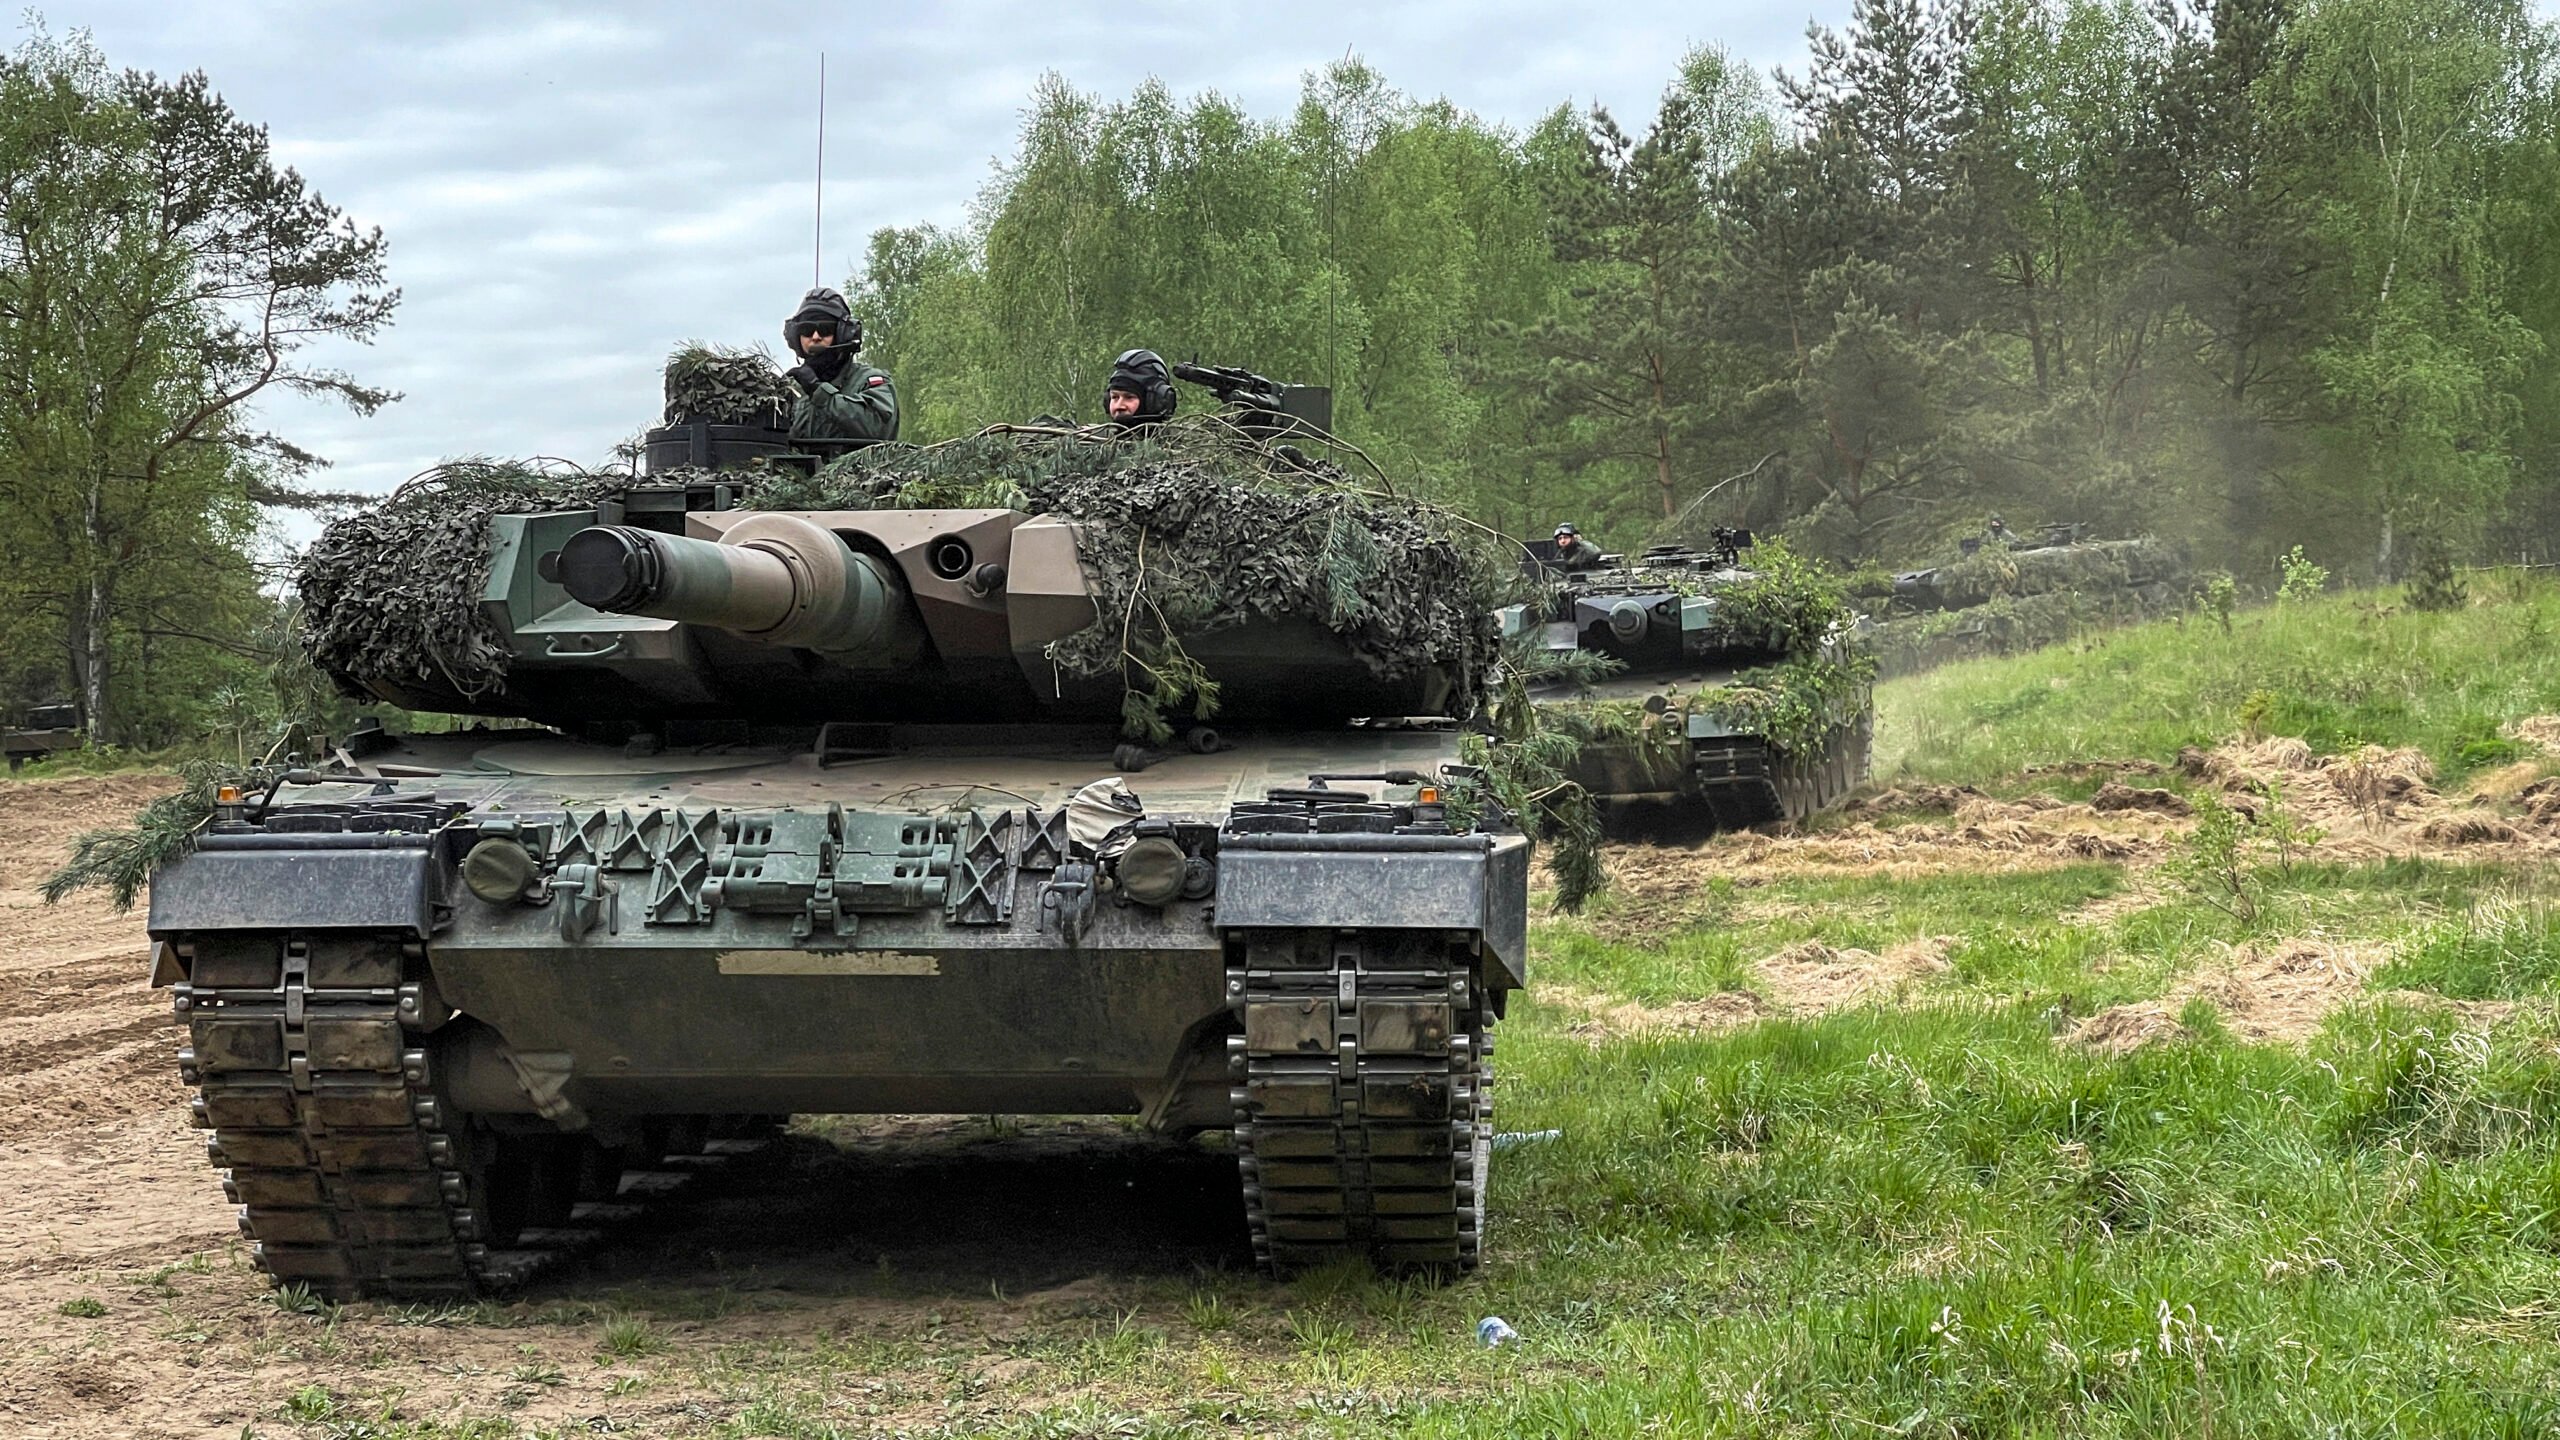 C'est officiel : La Pologne transfère 14 chars Leopard 2 allemands à l'Ukraine (mise à jour)